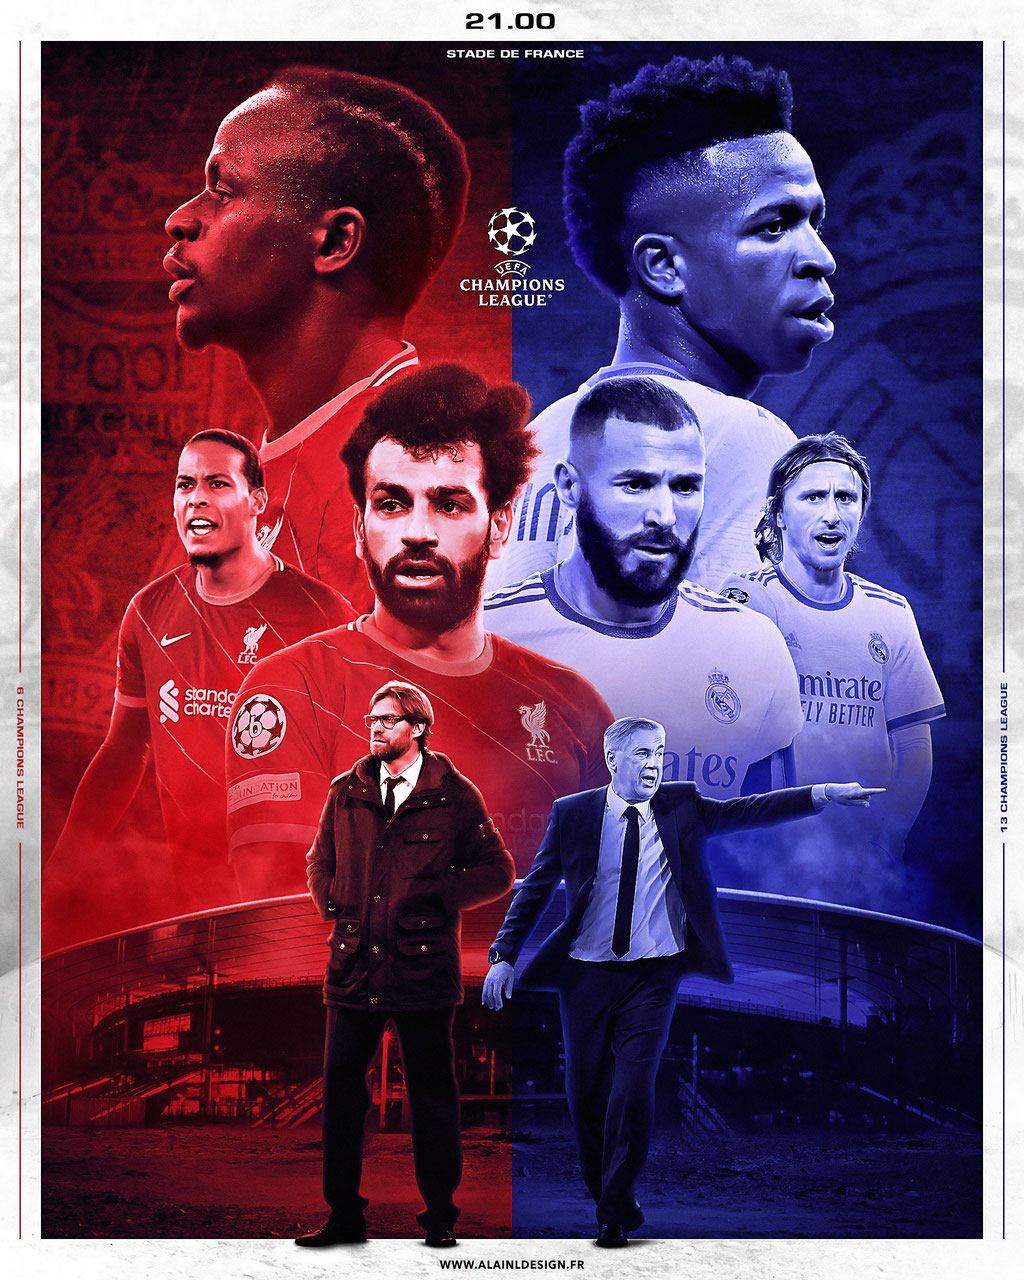 Liverpool vs Real Madrid - Finale Ligue des Champions - Affiche de match 